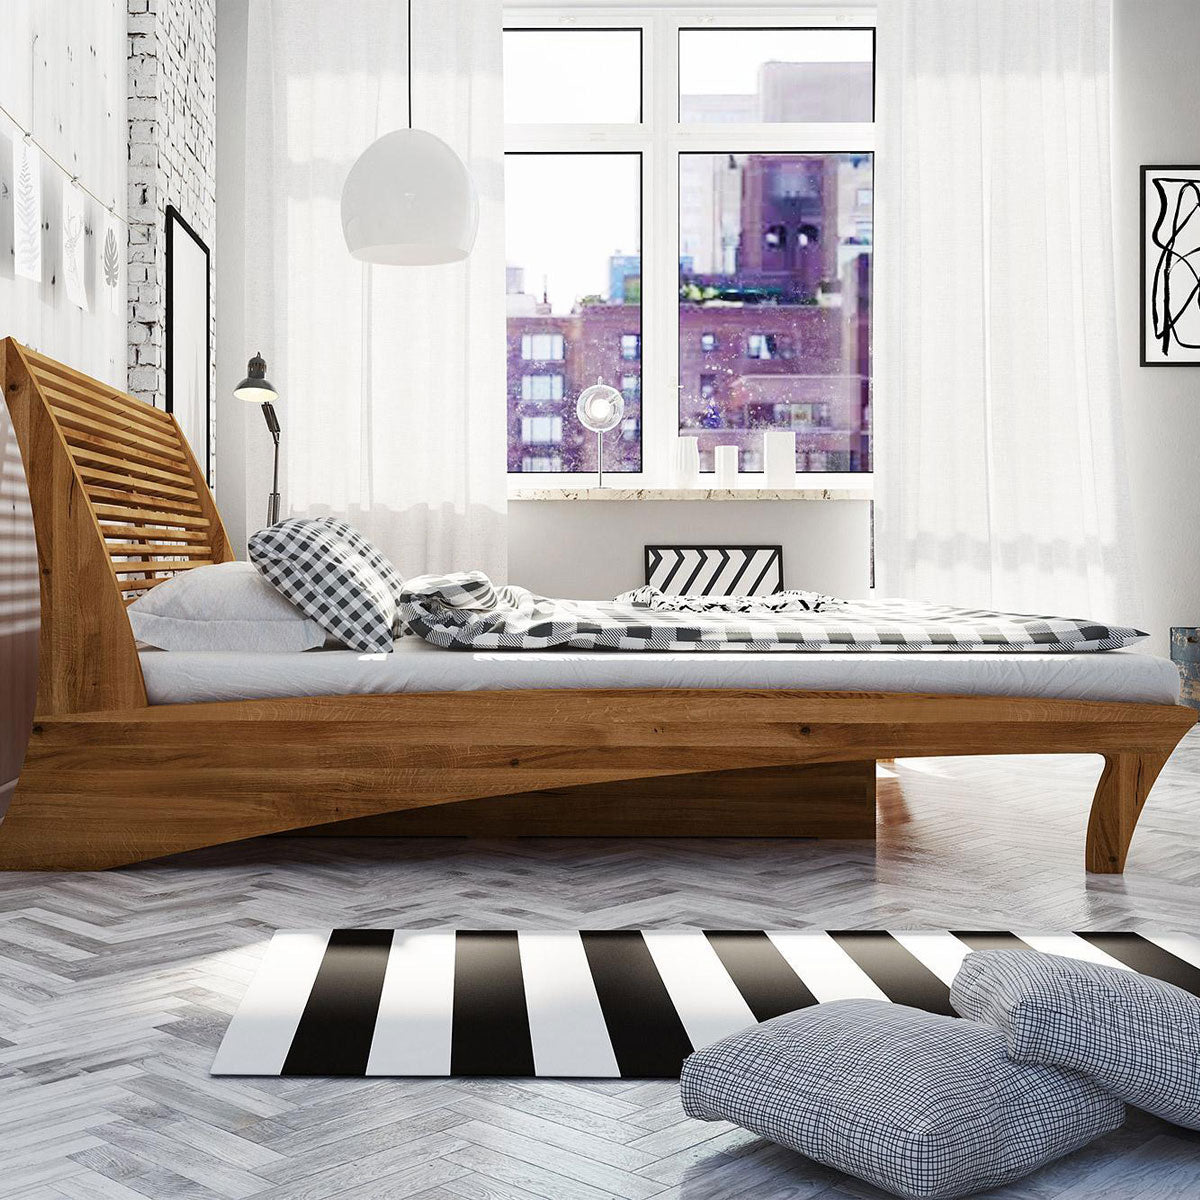 Doppelbett 'Space' - Designerbett inkl. Bettkasten & Lattenroste 140 bis 200 cm